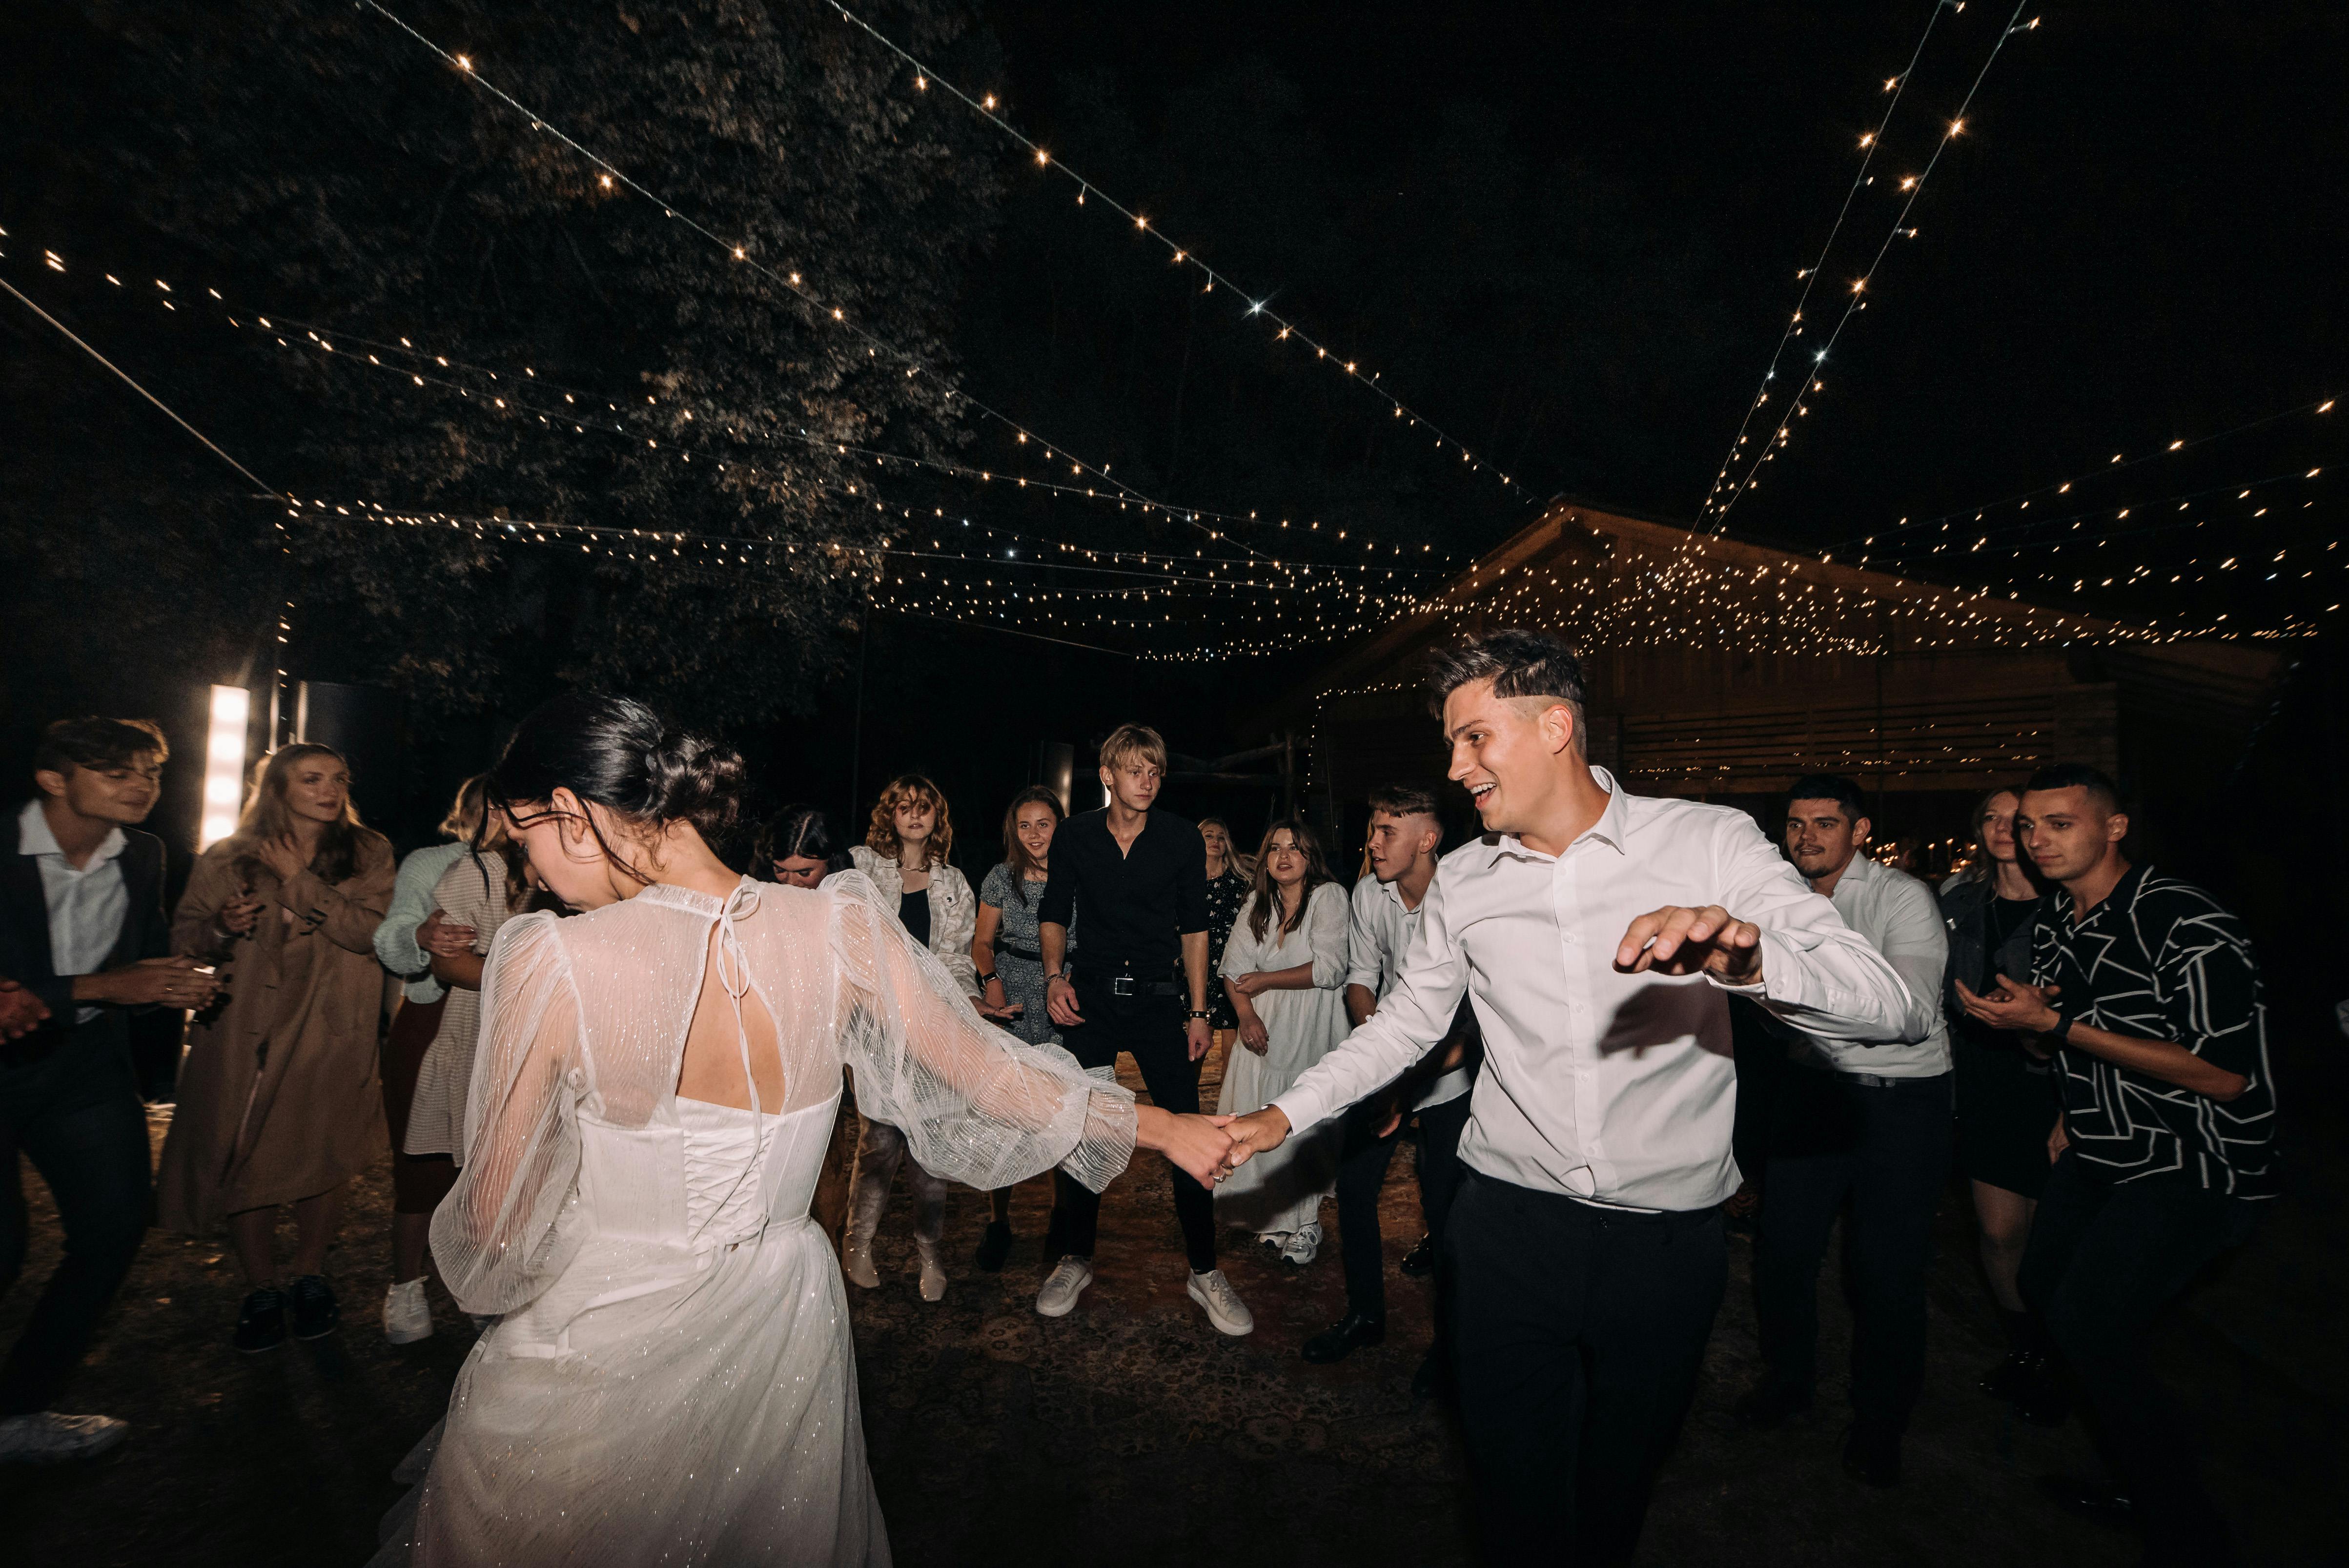 WEDDING GUESTS DANCING